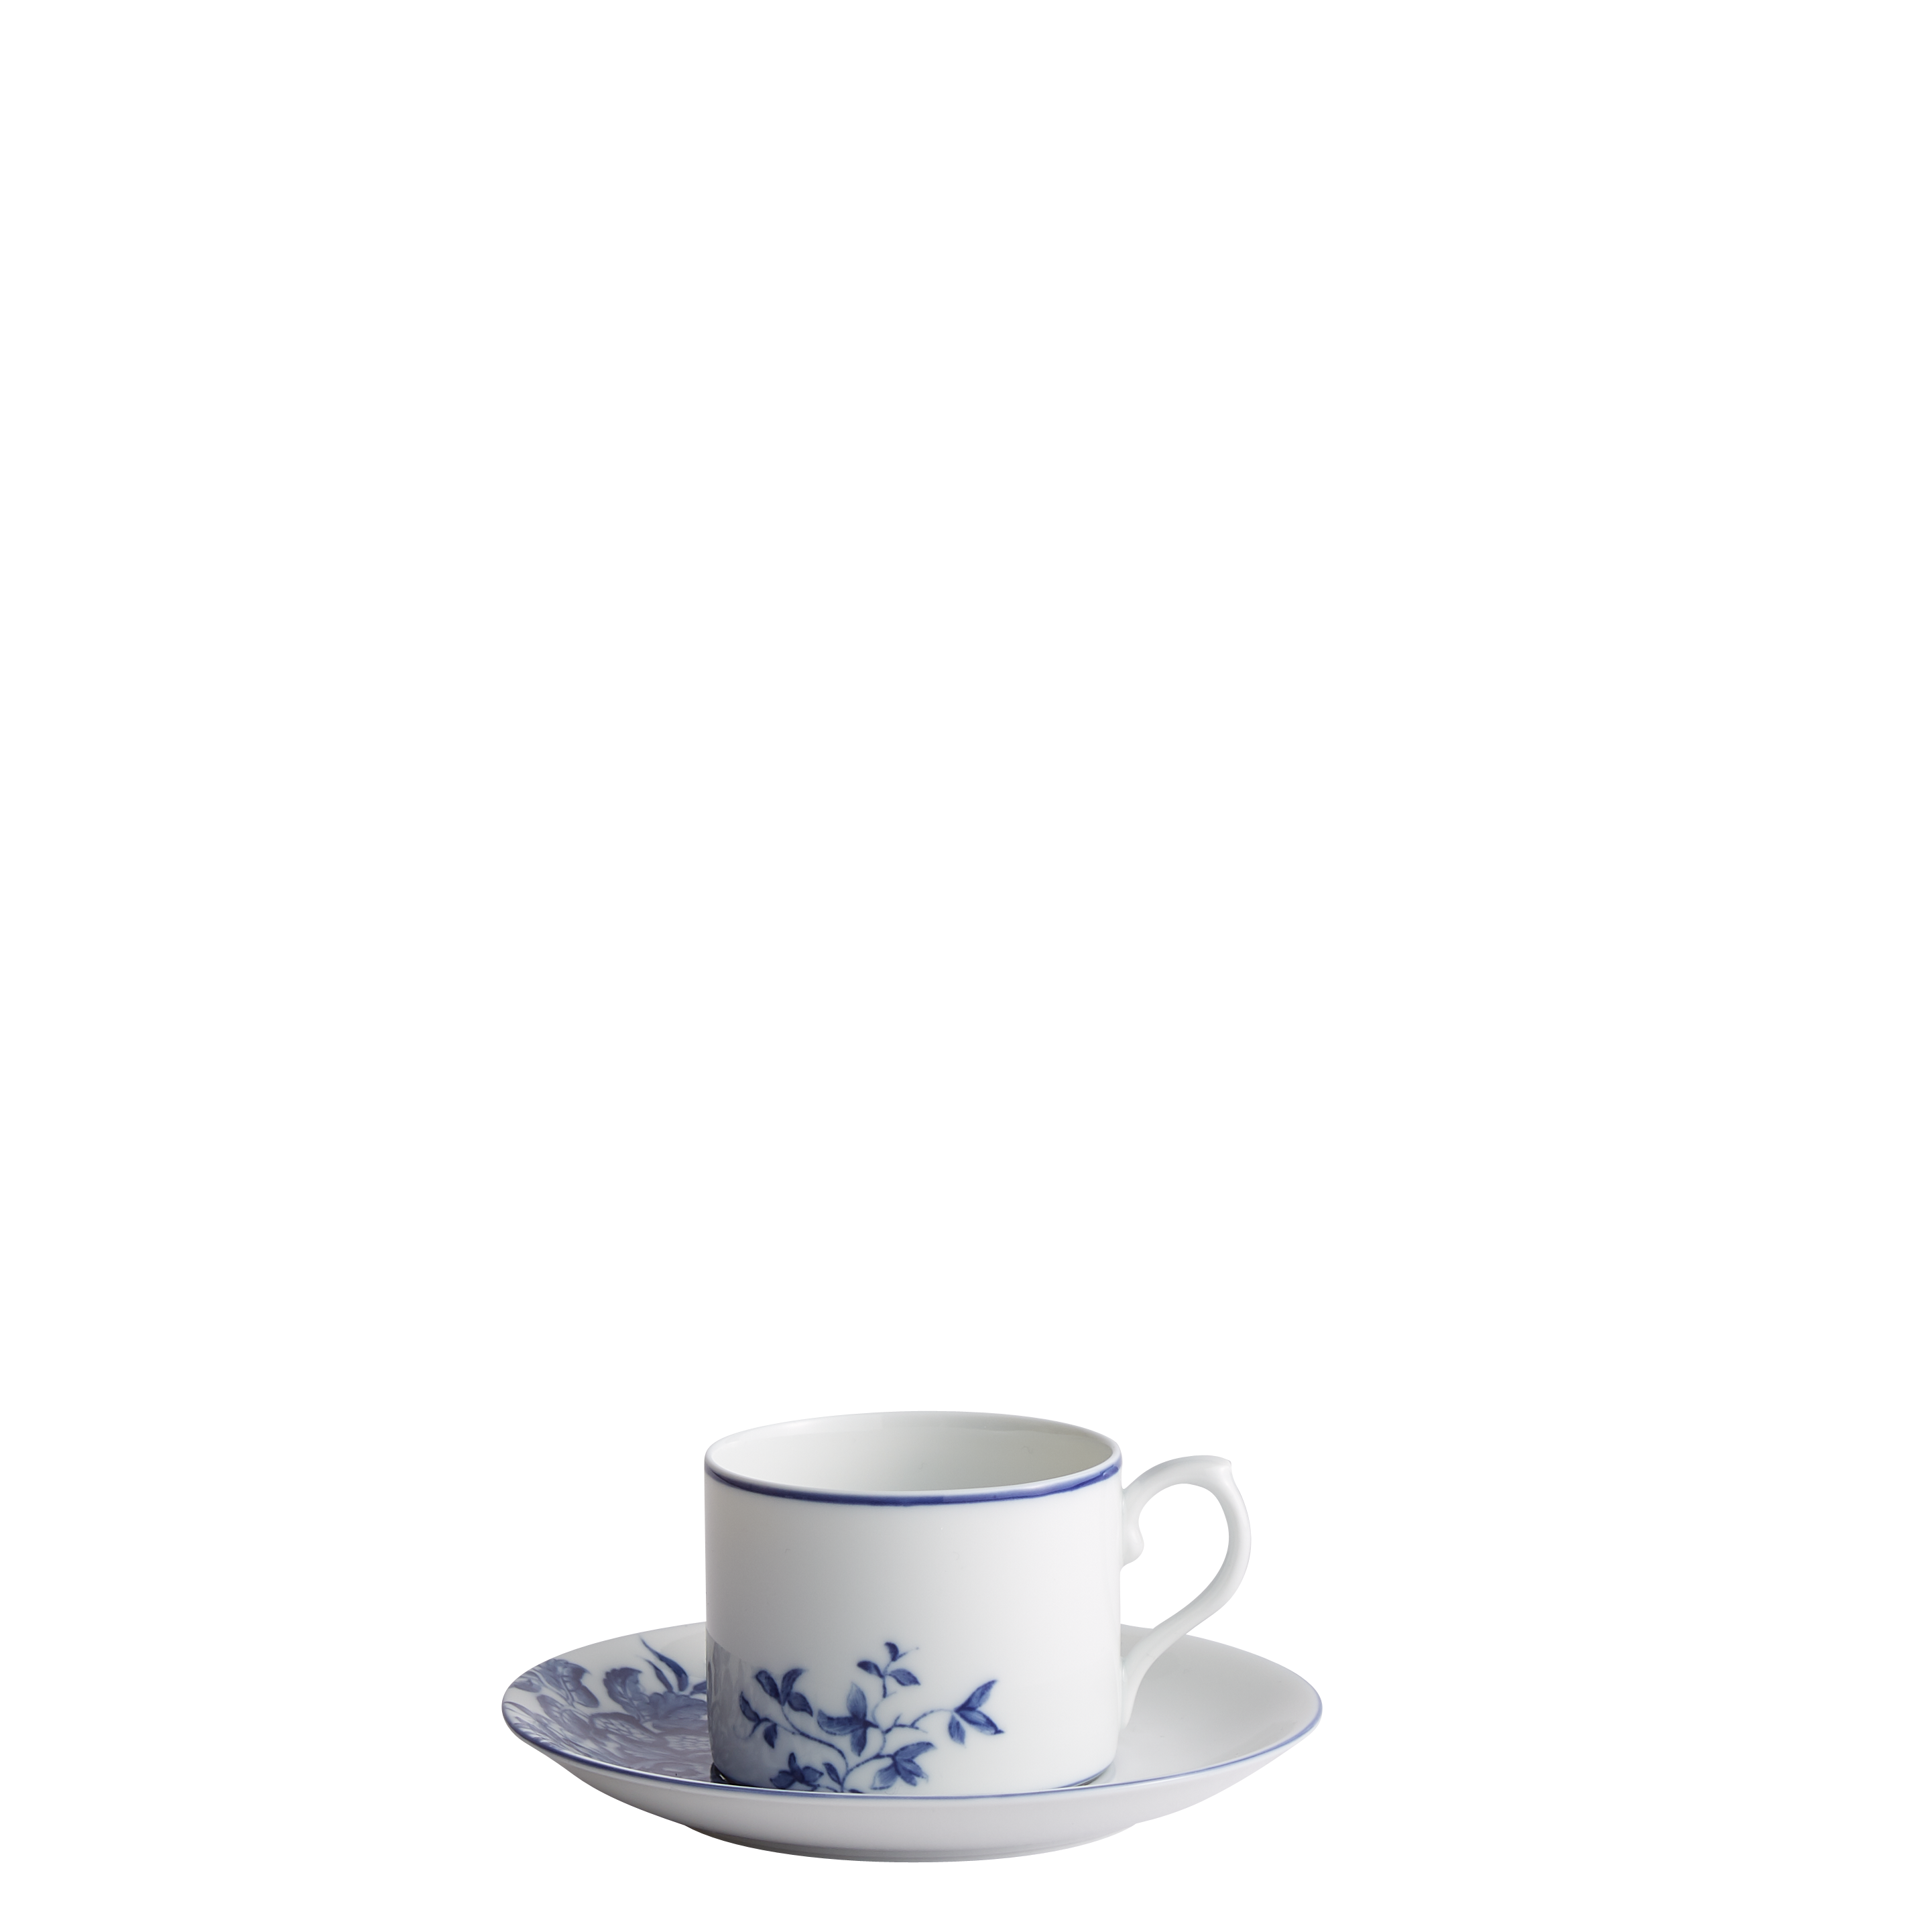 Mottahedeh Emmeline Tea Cup & Saucer